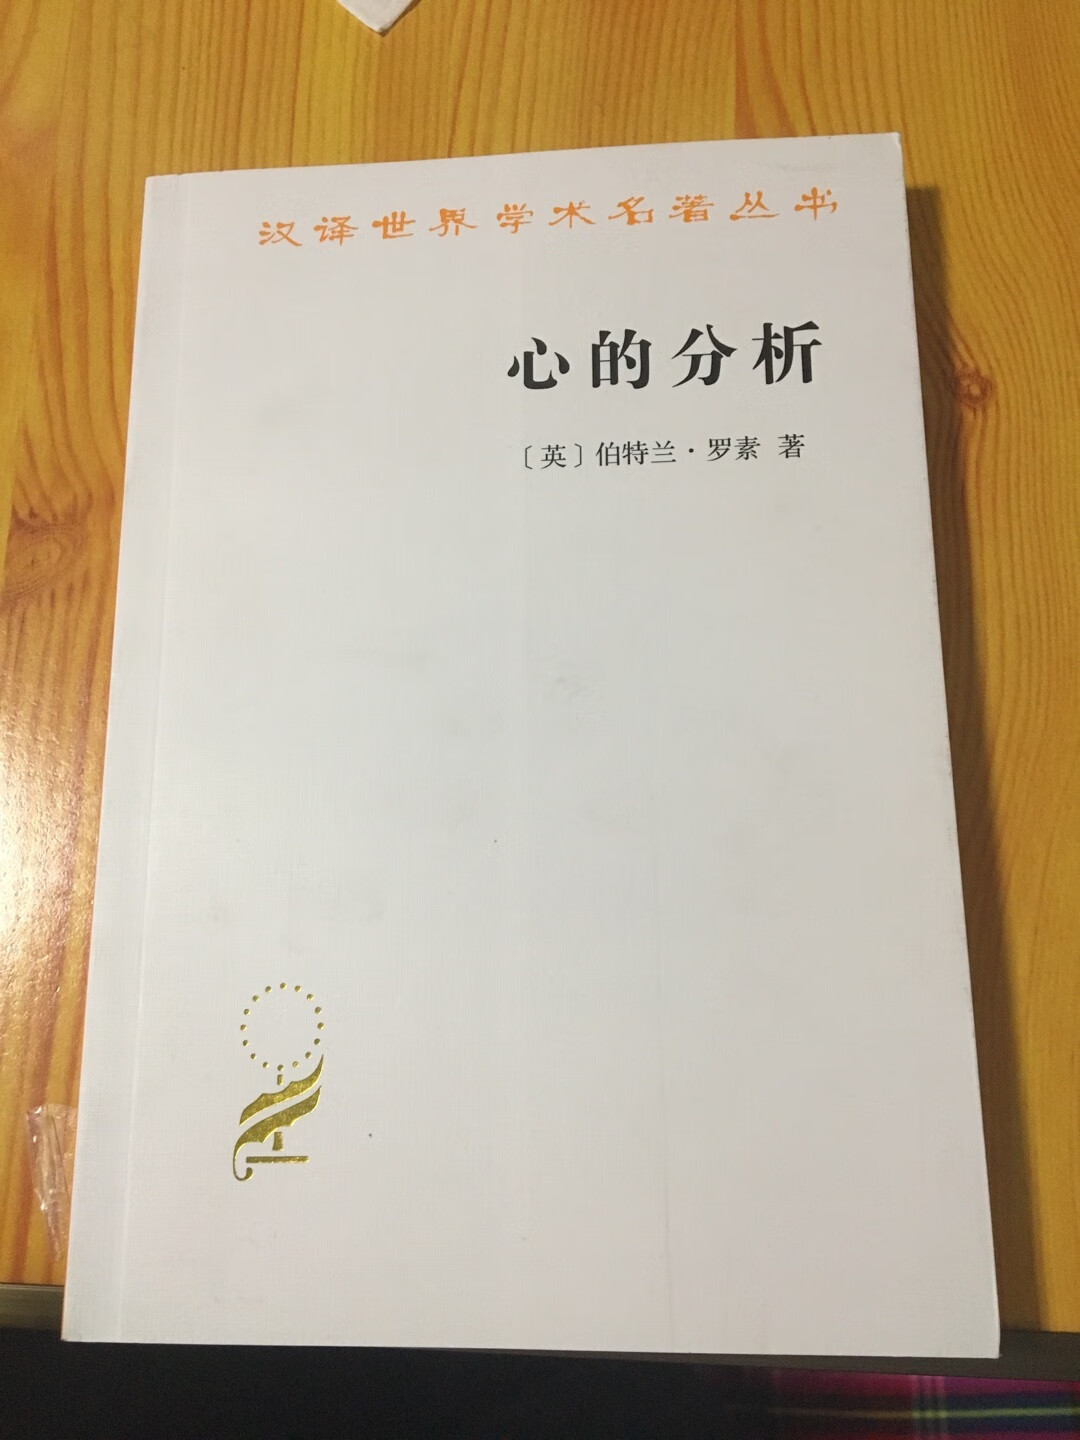 很喜欢汉译世界学术名著这个系列，对“心”这个话题也很好奇